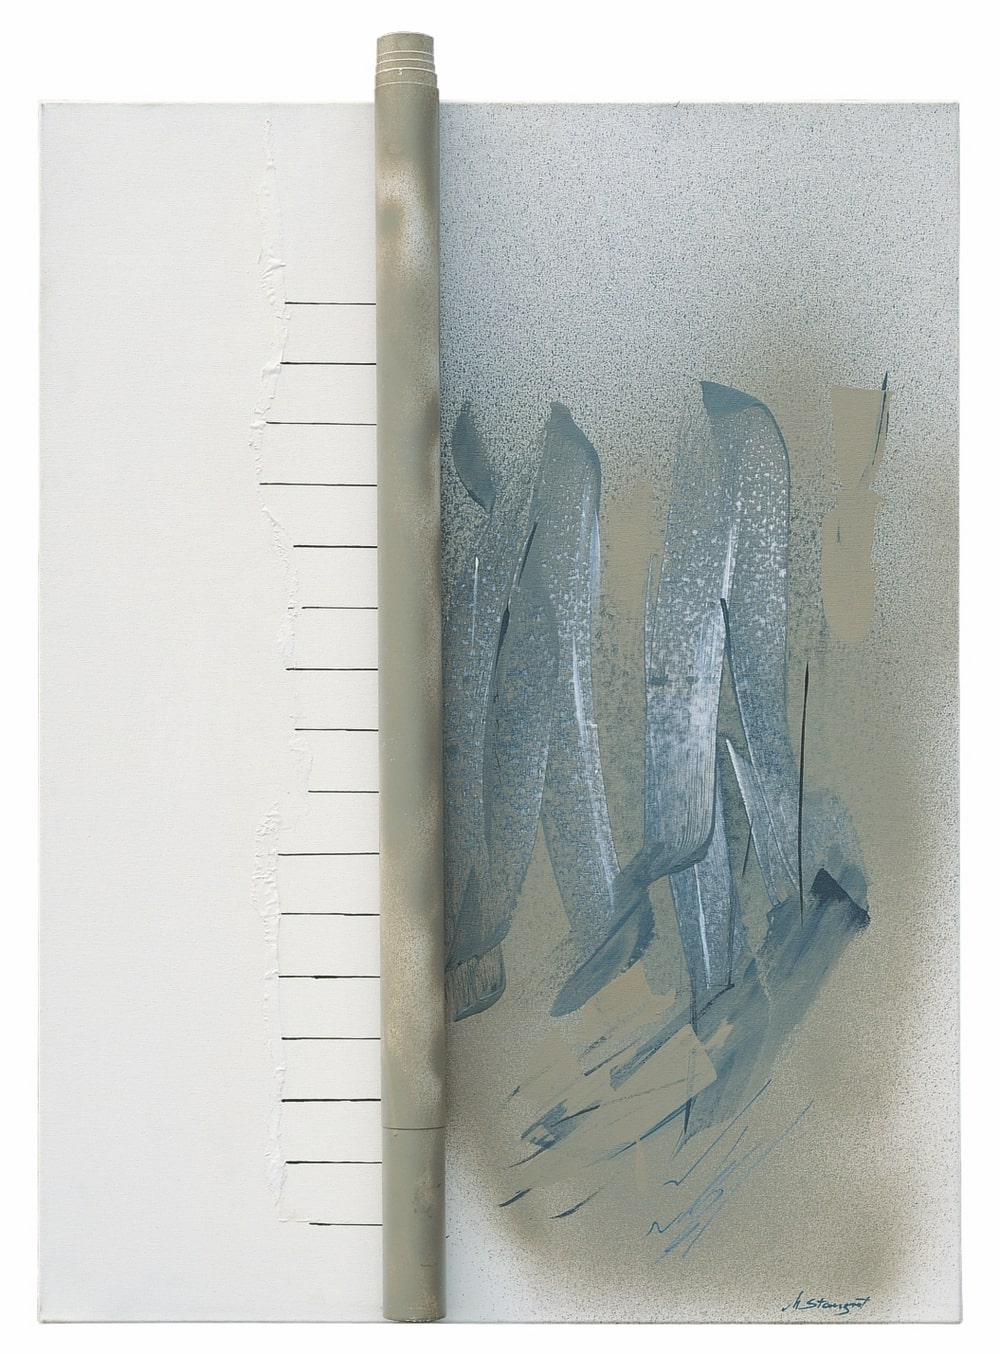 reprodukcja: obraz abstakcyjny, przedstawia pionowy akcent i szare podłużne plamy